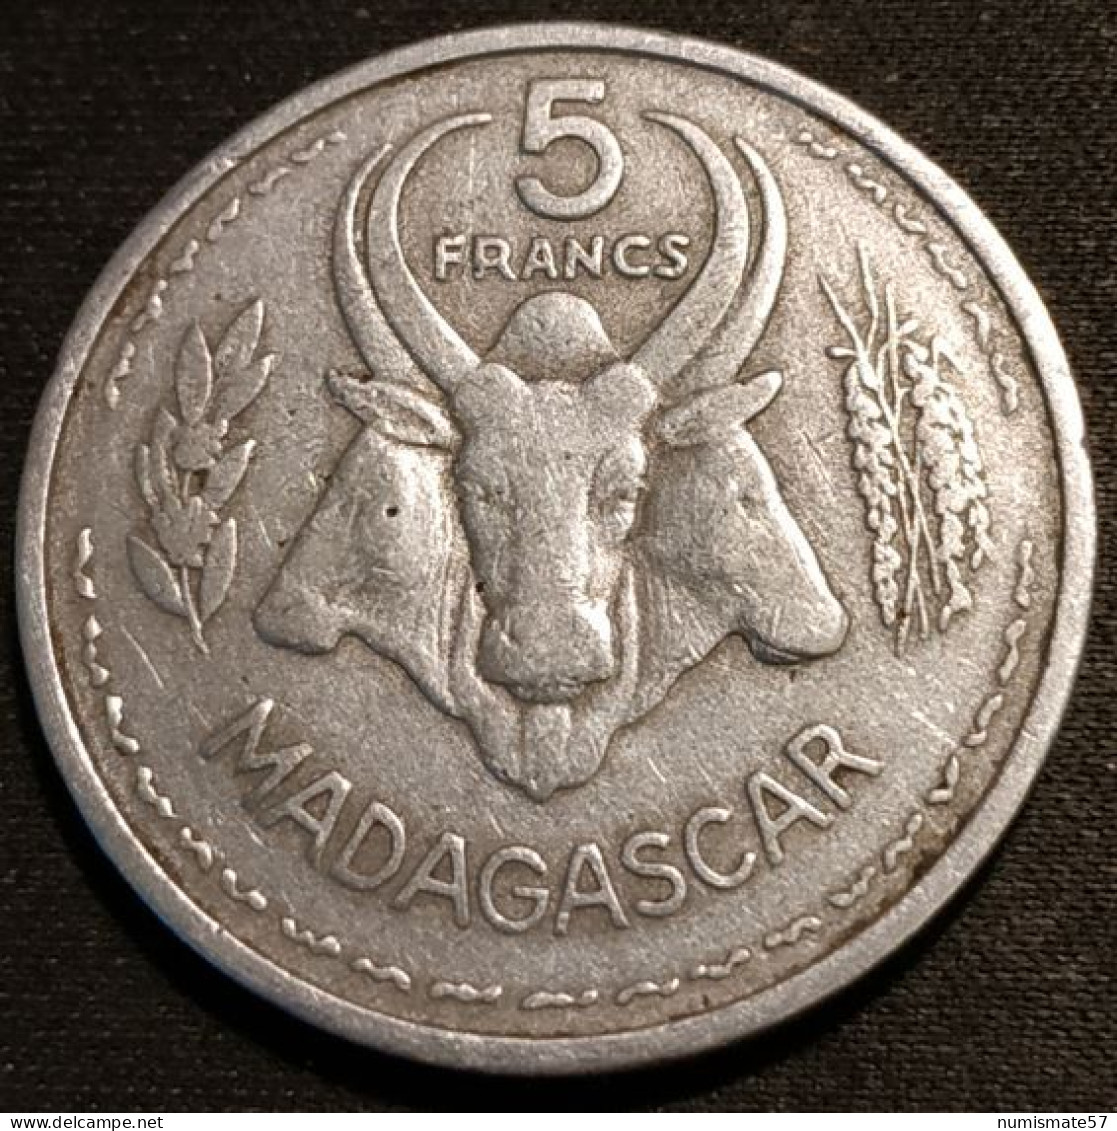 MADAGASCAR - 5 FRANCS 1953 - KM 5 - Madagascar